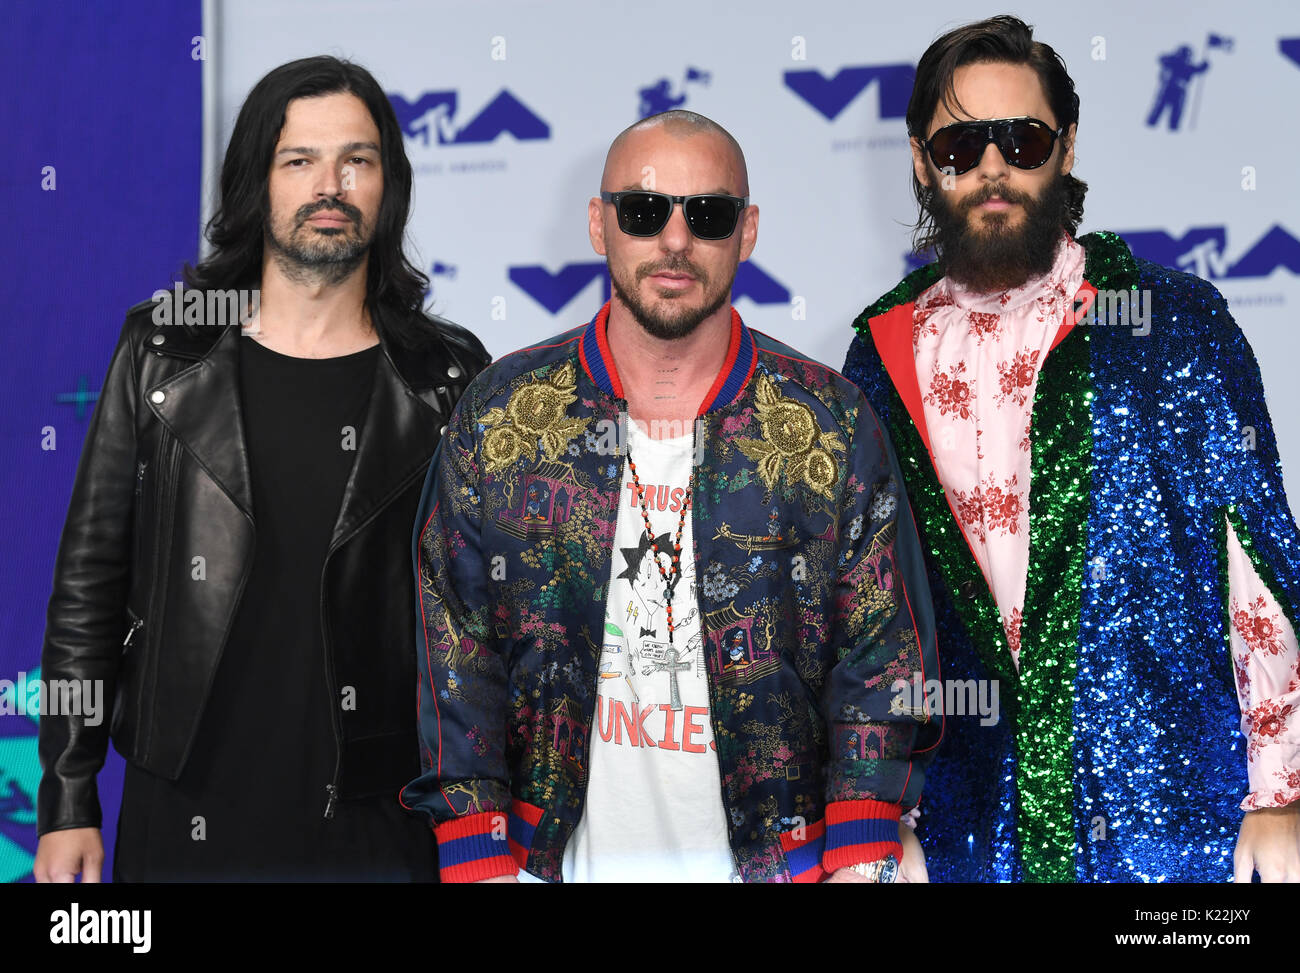 (De izquierda a derecha) Tomo Milicevic, Shannon Leto y Jared Leto de treinta segundos a Marte que asisten a los 2017 MTV Video Music Awards celebrado en el Forum de Los Angeles, EE.UU.. Foto de stock